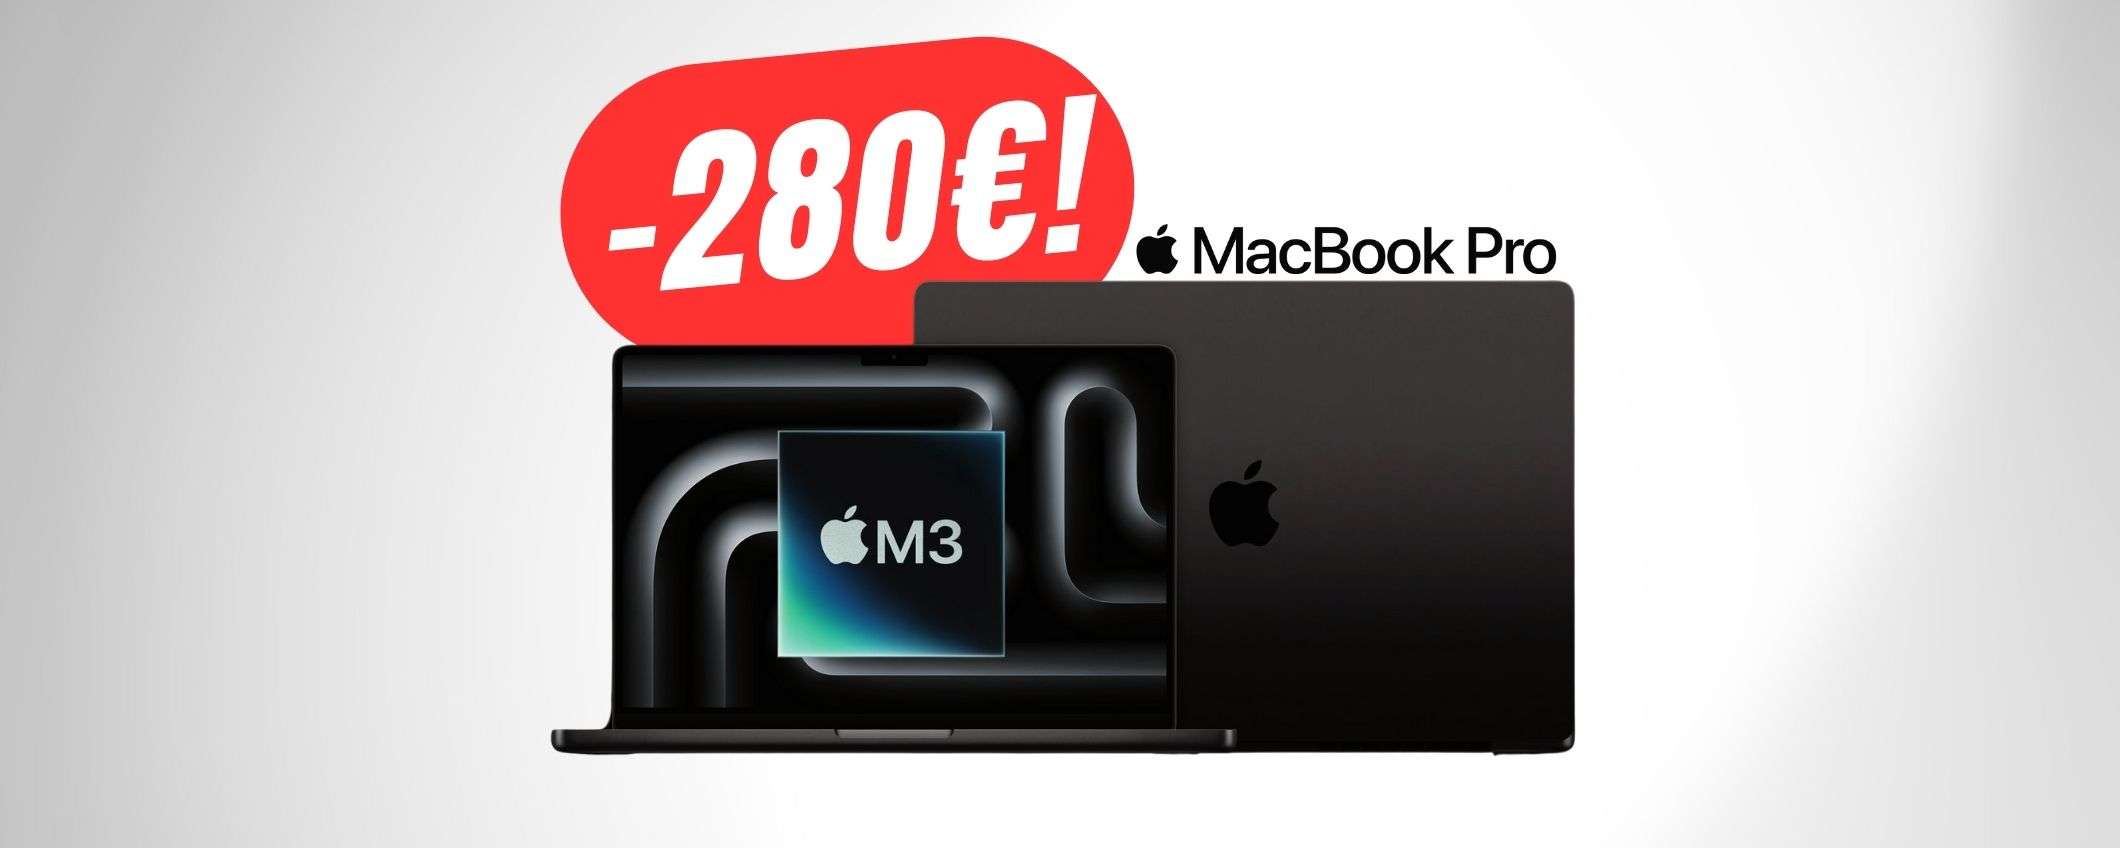 FOLLIA da Amazon: il MacBook Pro (M3) è SCONTATO di -280€!